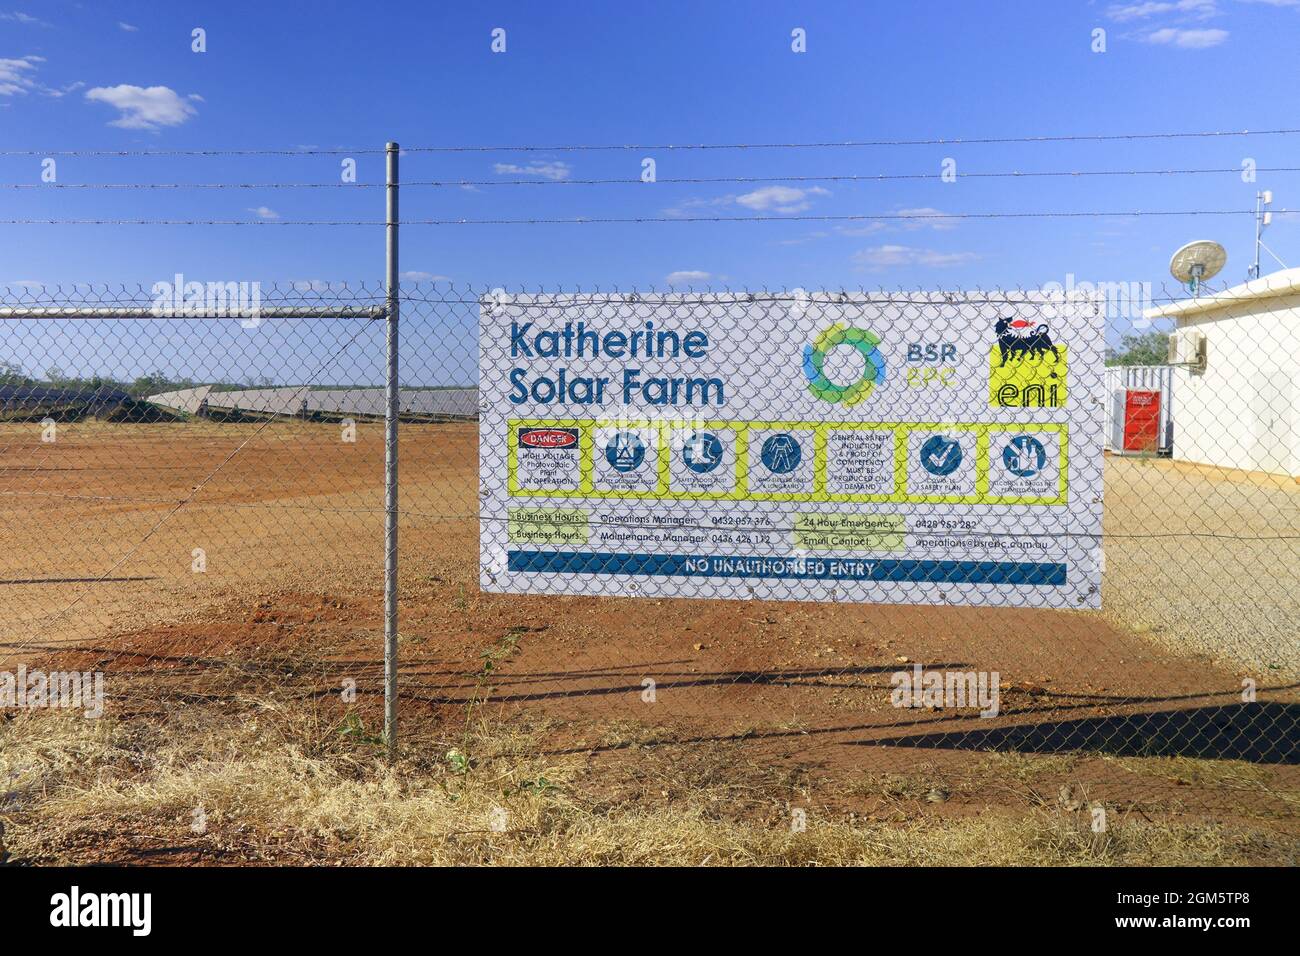 Granja Solar Katherine, fuera de Katherine, Territorio del Norte, Australia. Sin PR Foto de stock